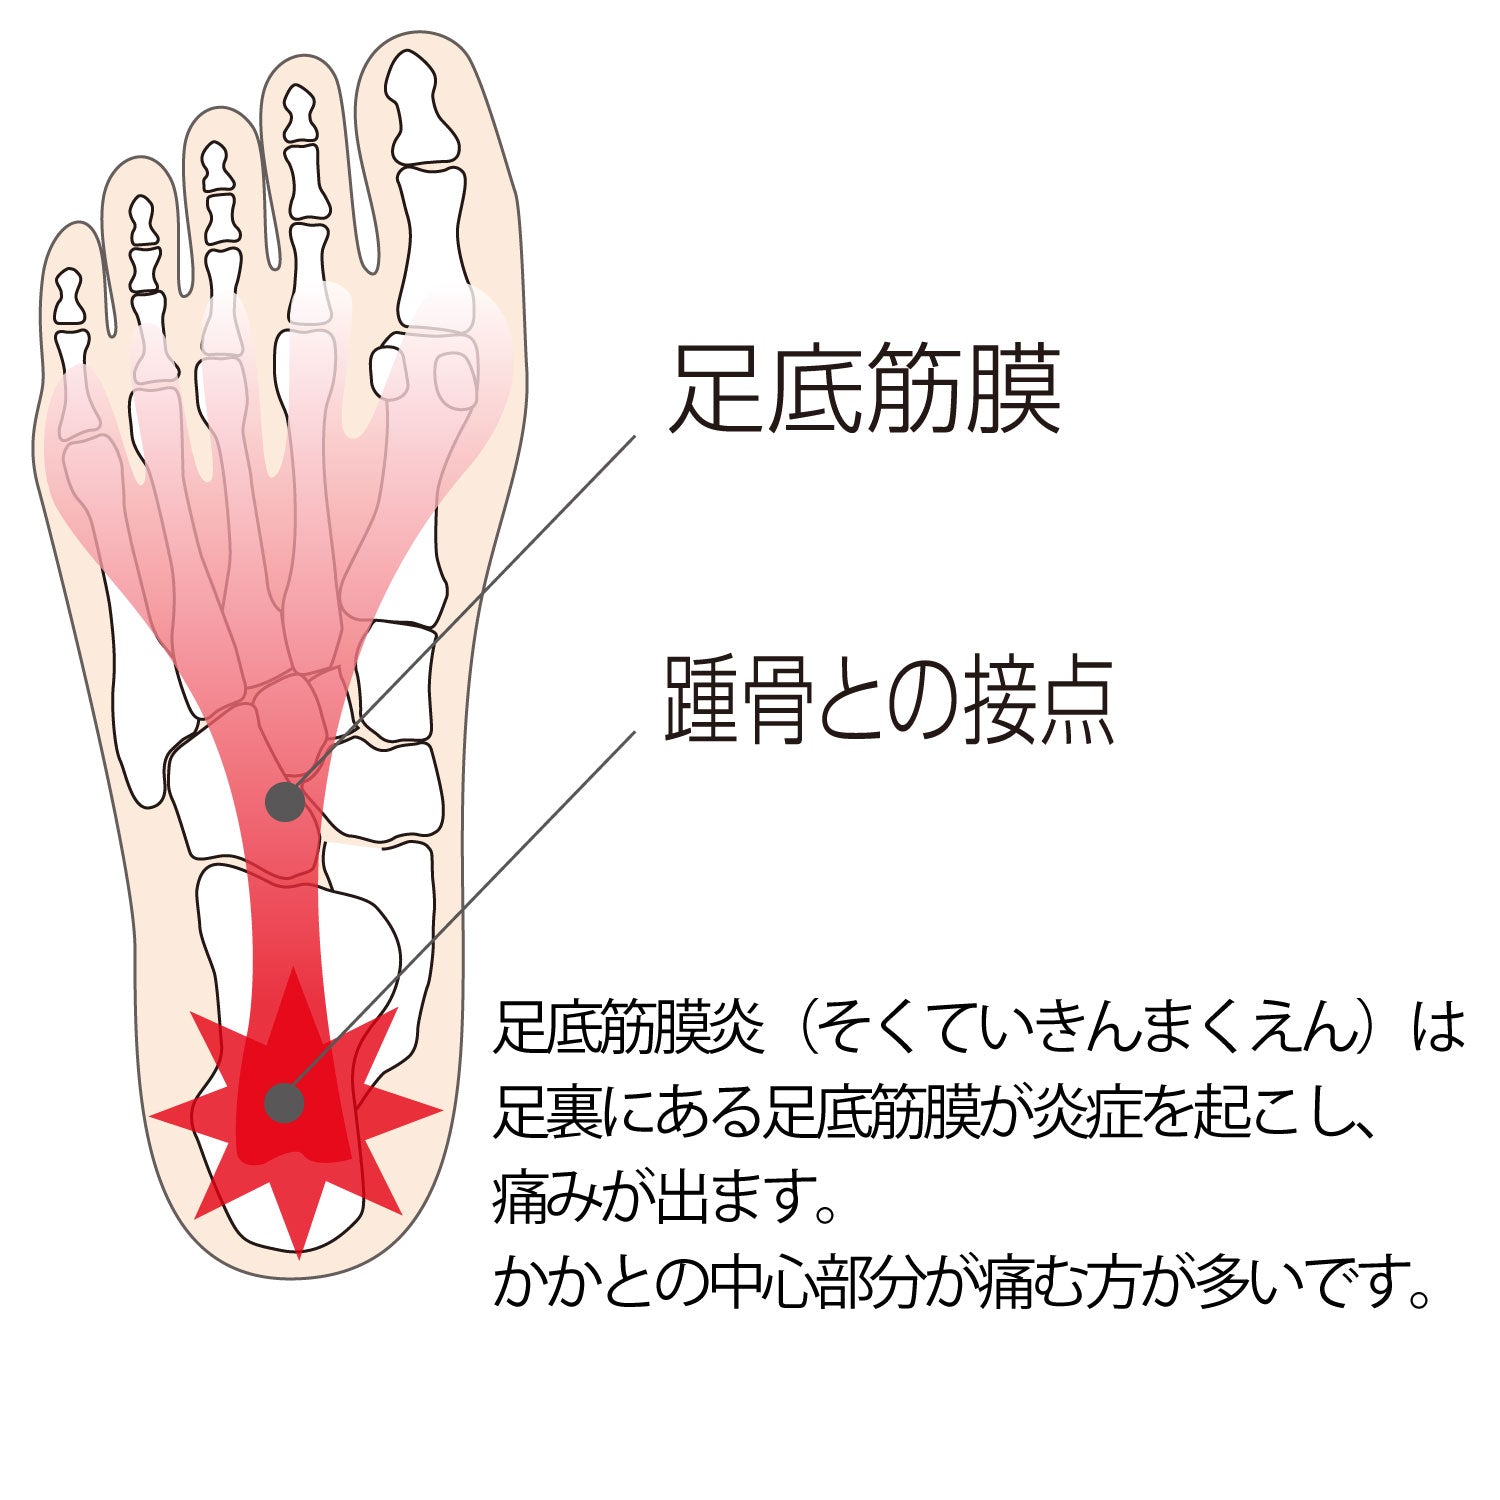 足底筋膜炎は足裏にある足底筋膜が炎症を起こし痛みが出ます。かかとの中心部分が痛む方が多いです